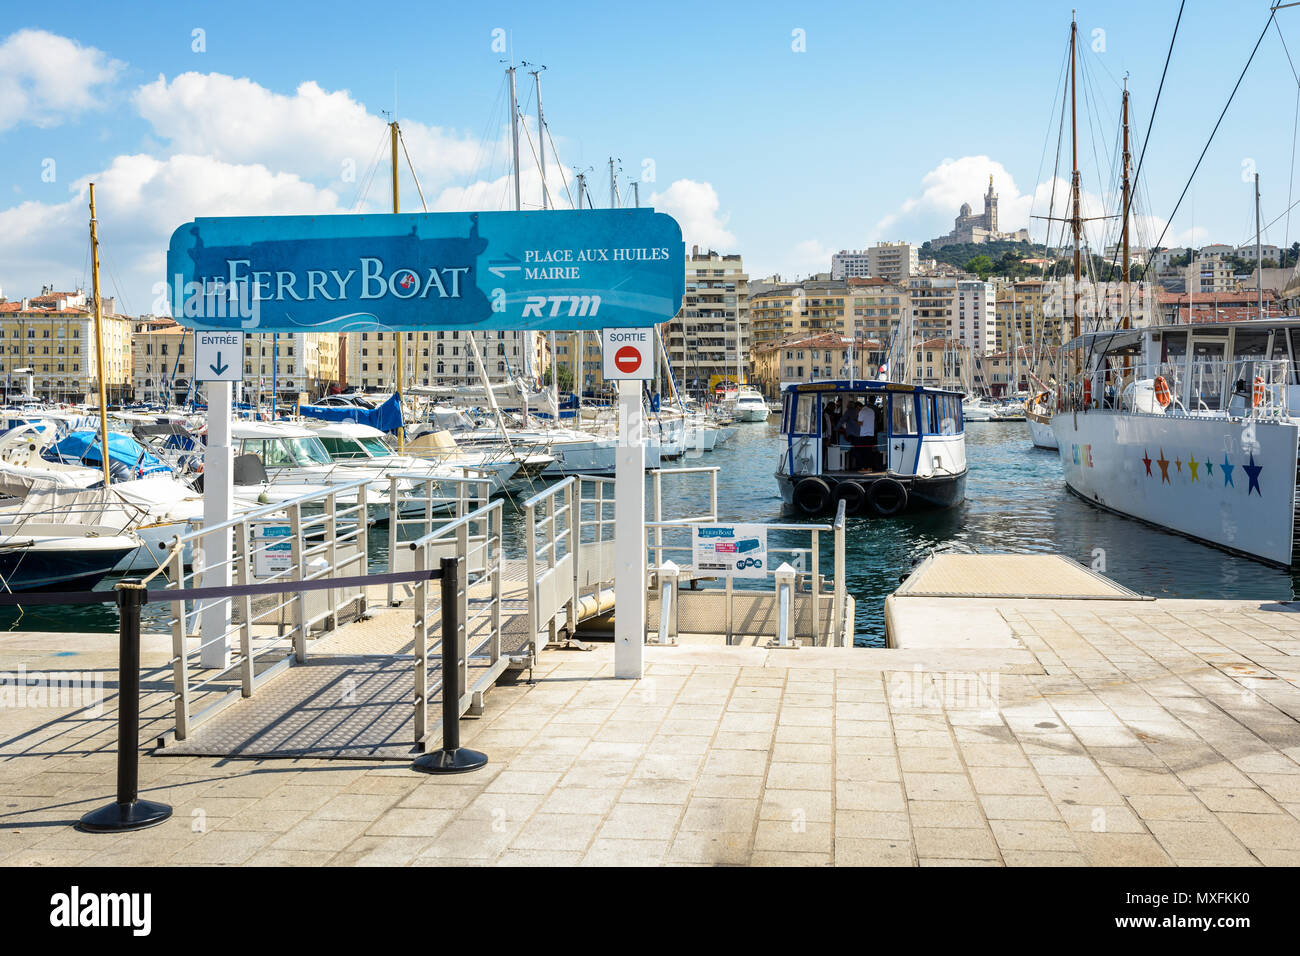 Le bateau, une course-navette maritime public aujourd'hui par le RTM, permet de traverser le Vieux Port de Marseille depuis 1880, pour l'un des plus courts crossing Banque D'Images